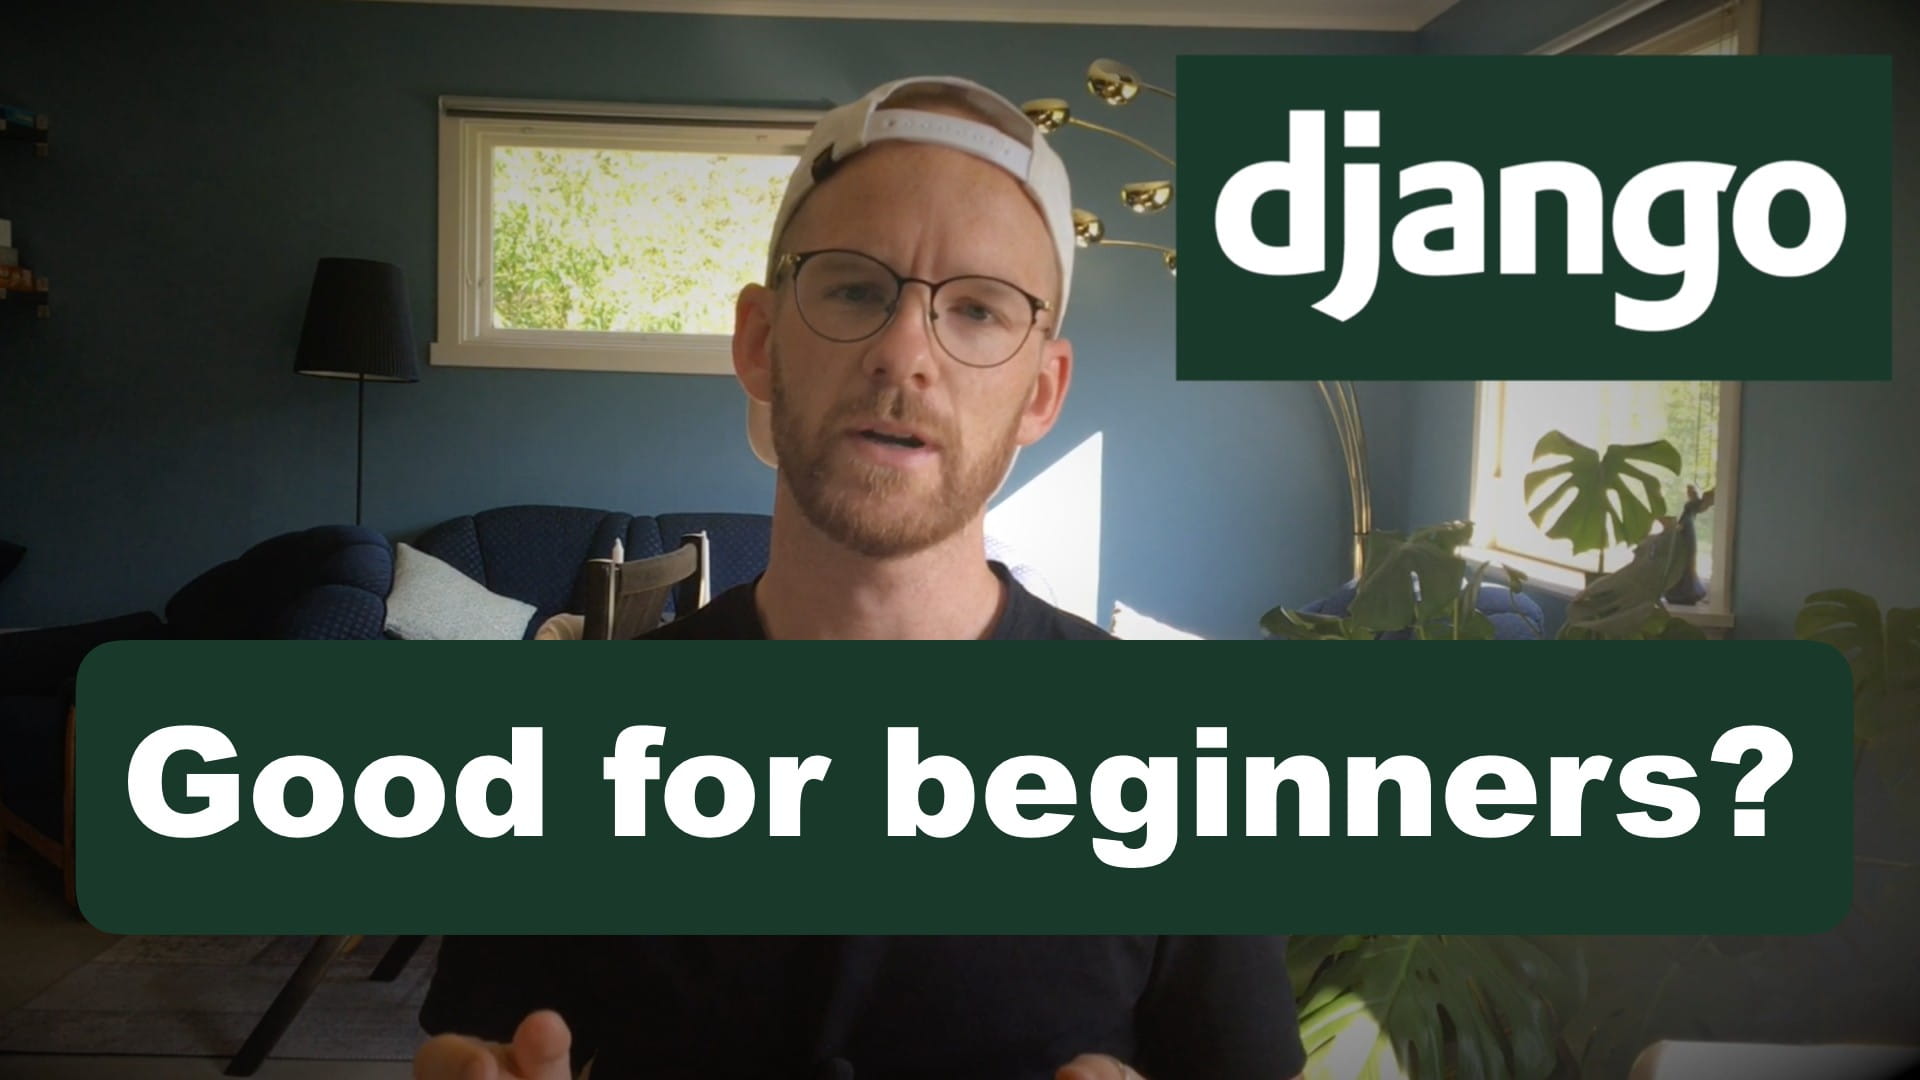 Is Django A Good Choice For A Beginner?